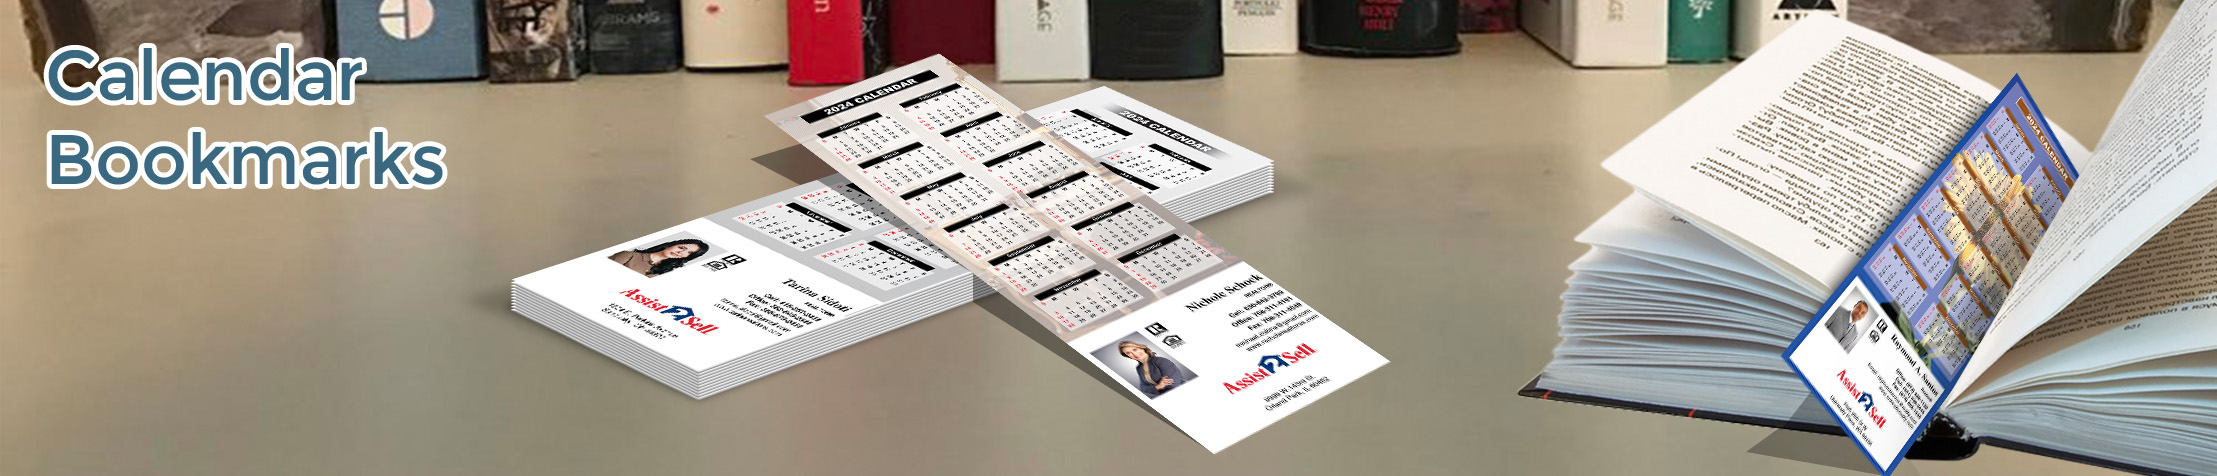 Assist2Sell Real Estate Calendar Bookmarks - Assist2Sell Real Estate  2019 calendars printed on book markers | BestPrintBuy.com